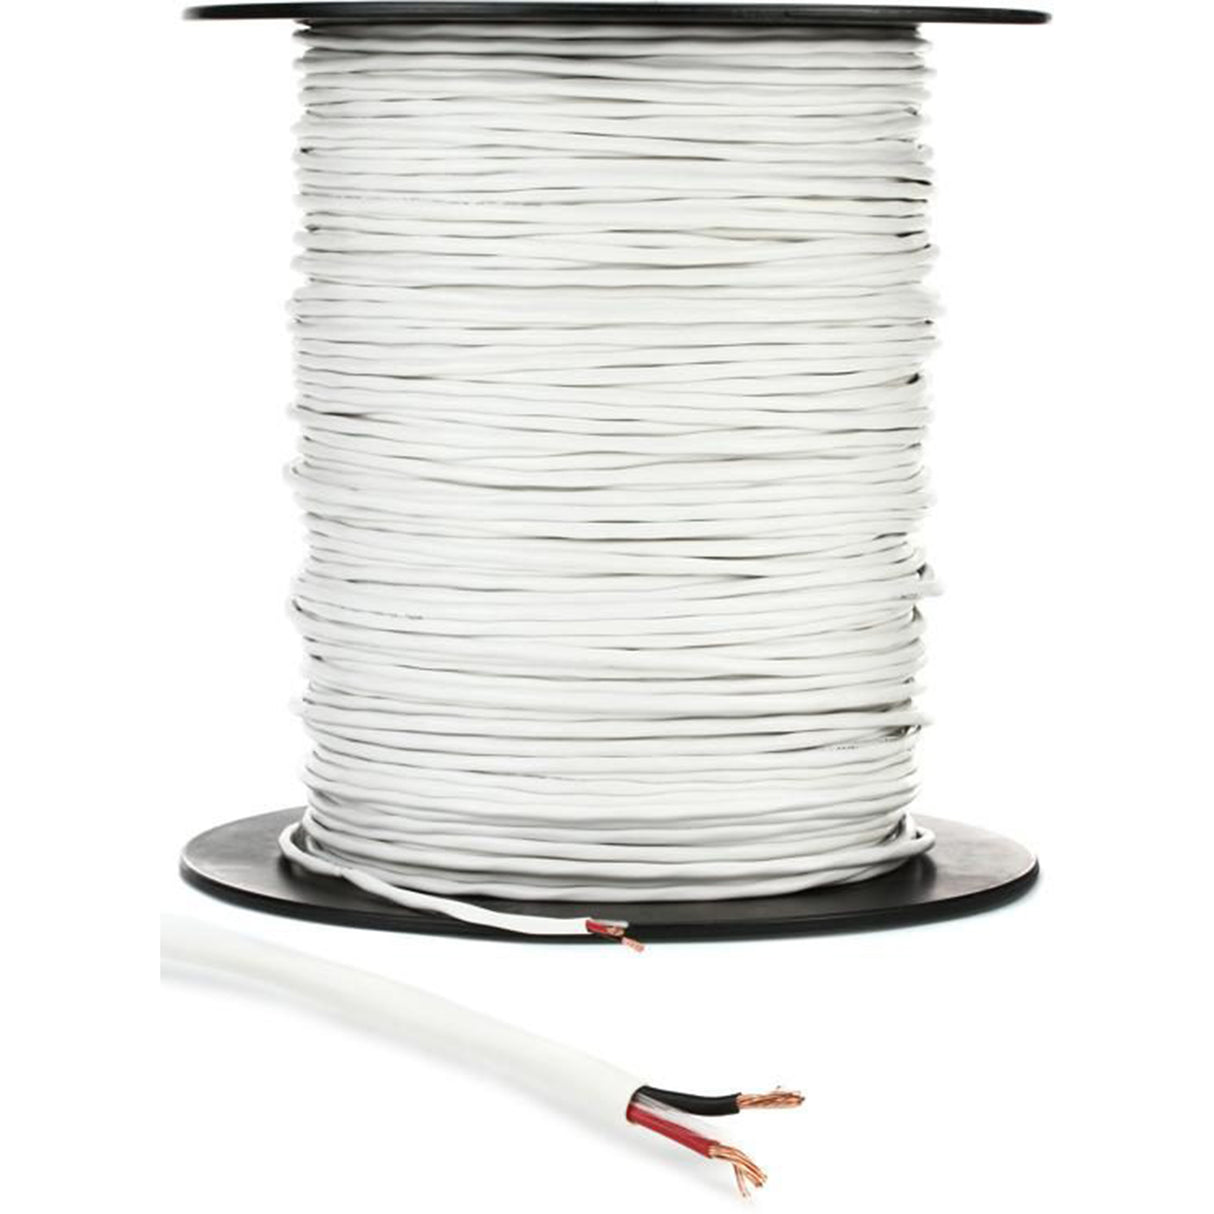 Konig Speaker Cable (16 Gauge / 1.50 mm²) White - 305 Meters Spool (KNAR15101WH305)